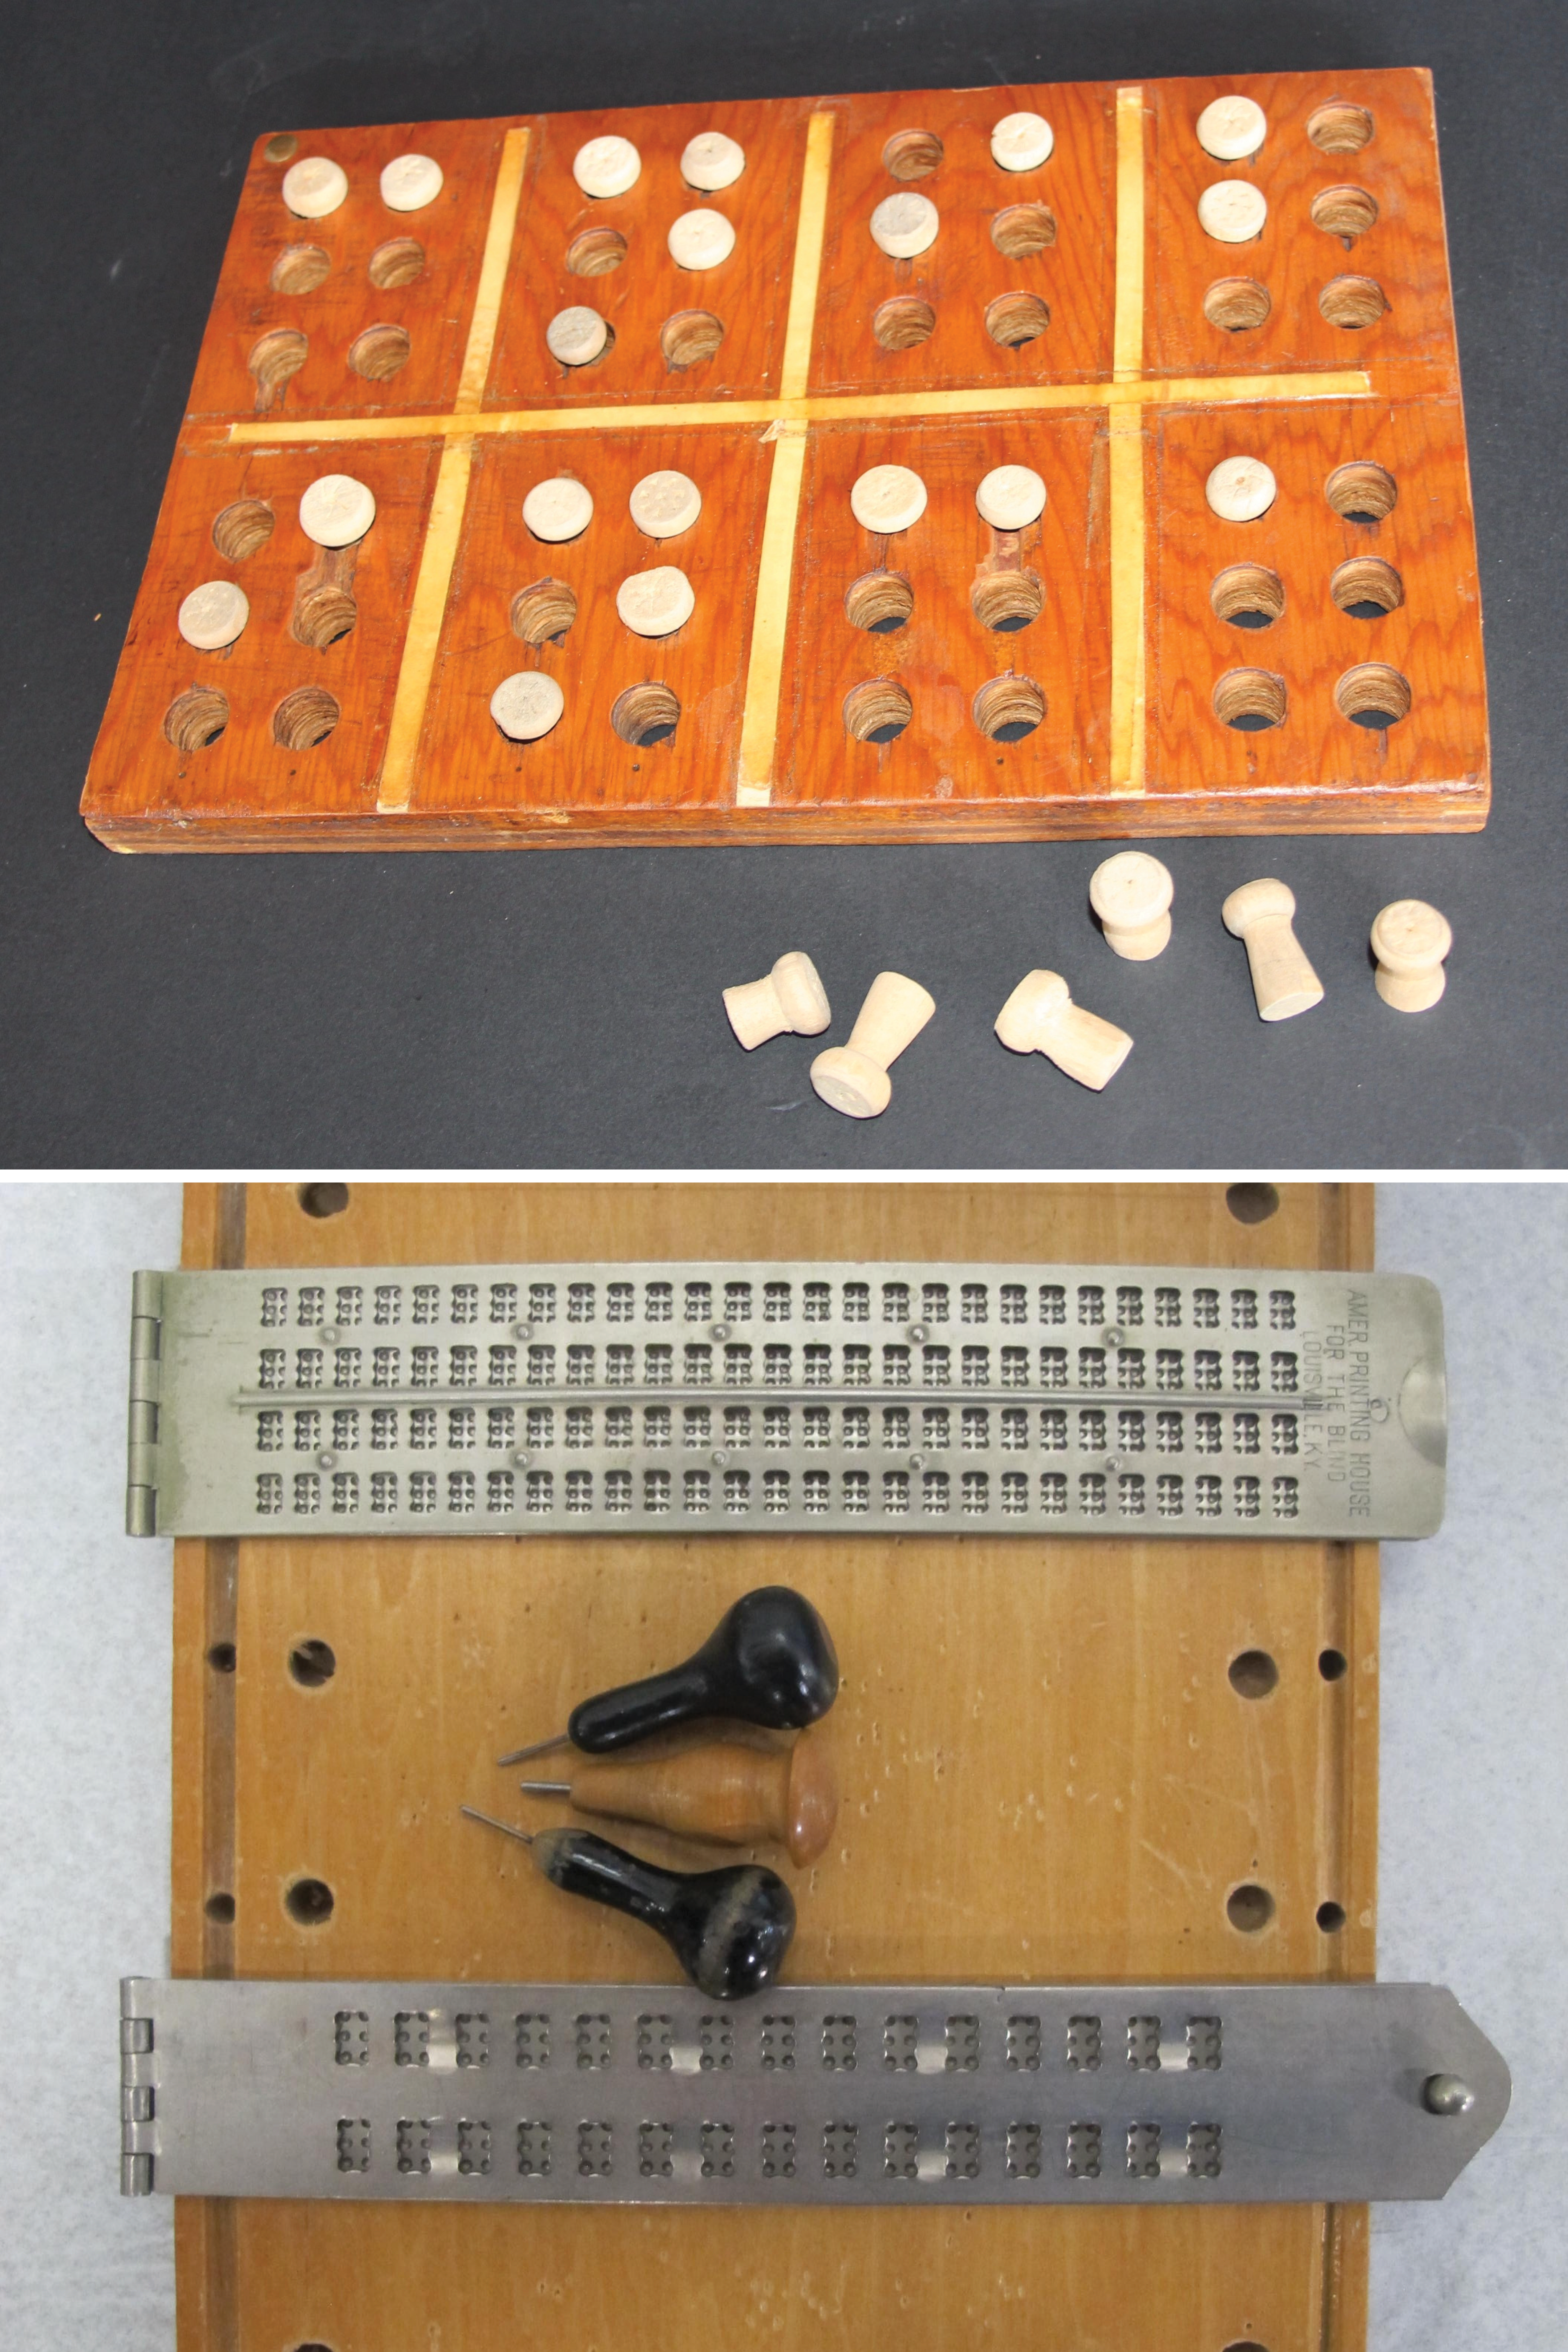 Haut: Outil d'enseignement du braille. Une planche en bois fabriquée à la main avec deux rangées de cellules braille à 6 points et des chevilles en bois. Sur cette photo, on peut lire CNIB en braille sur la rangée supérieure et INCA sur la deuxième rangée. Bas : Exemples de tablette et poinçon braille. 